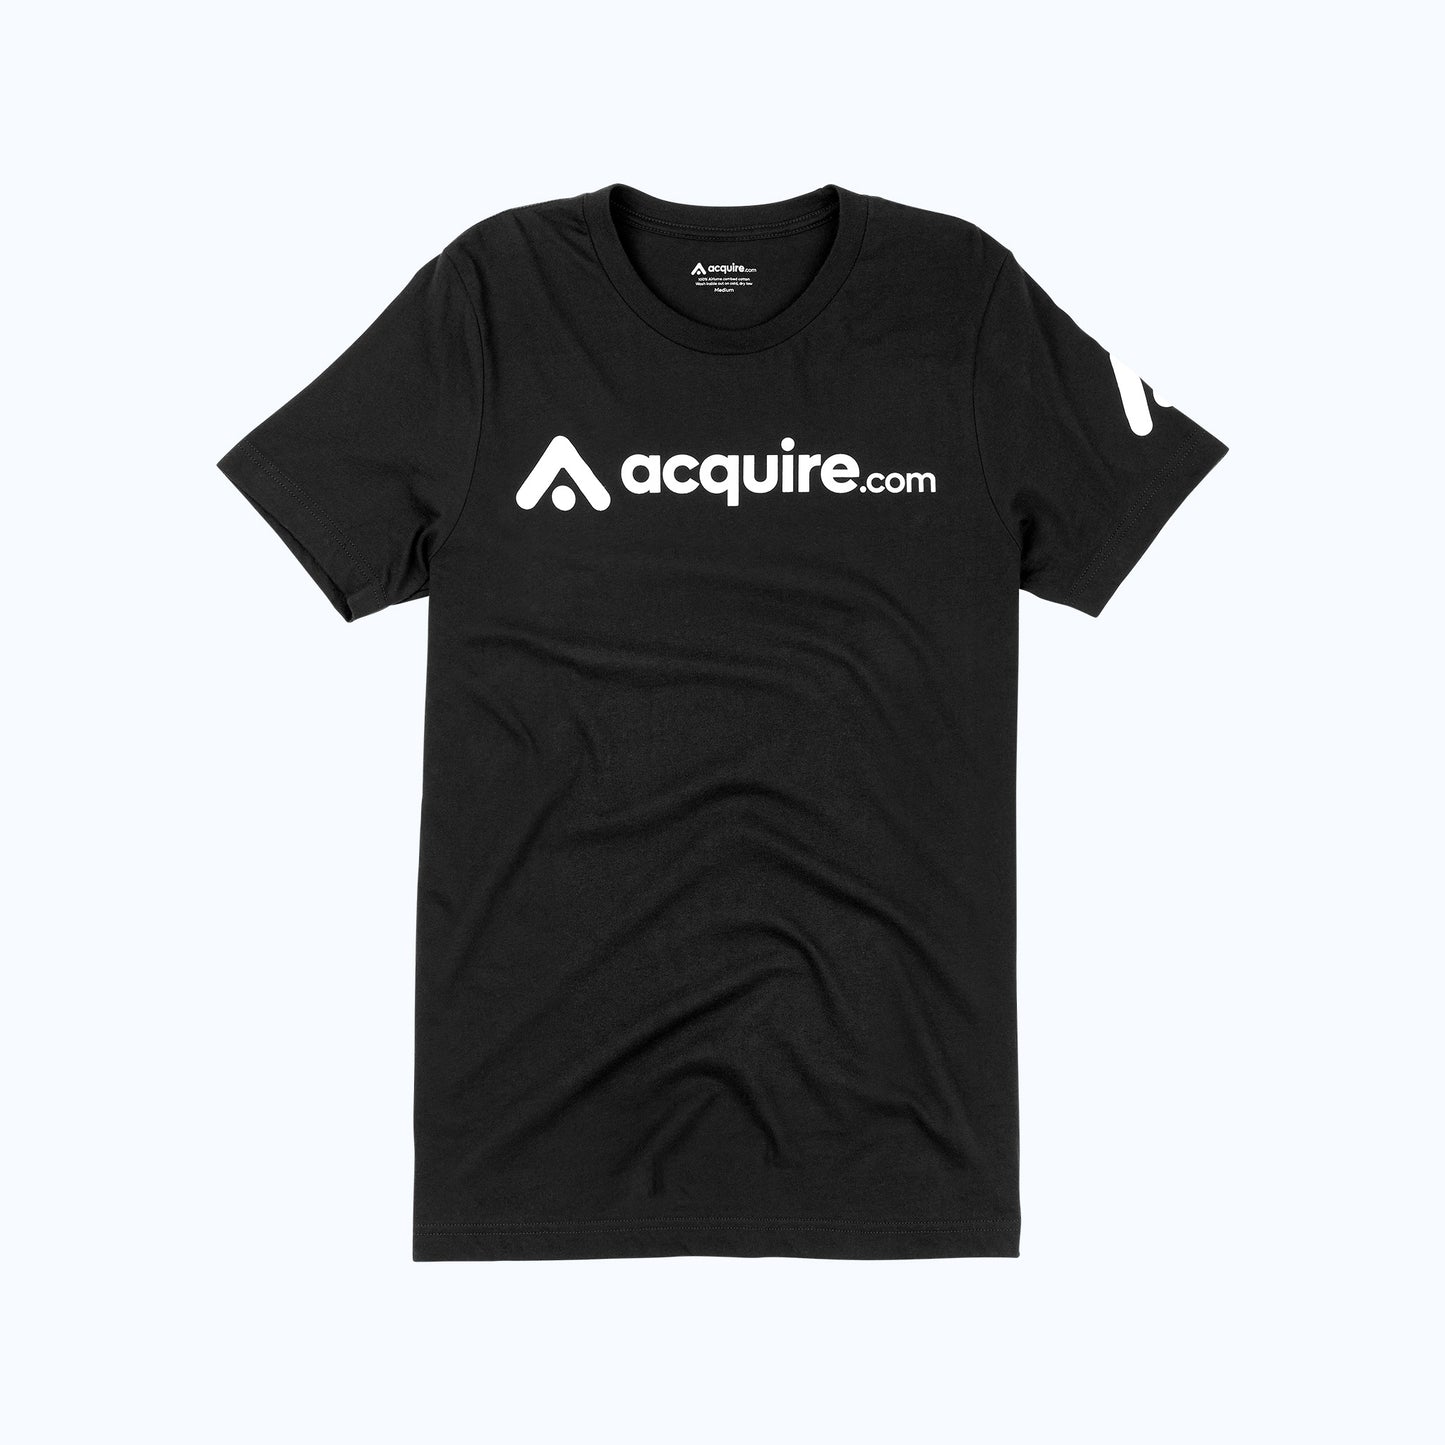 Acquire.com T-shirt